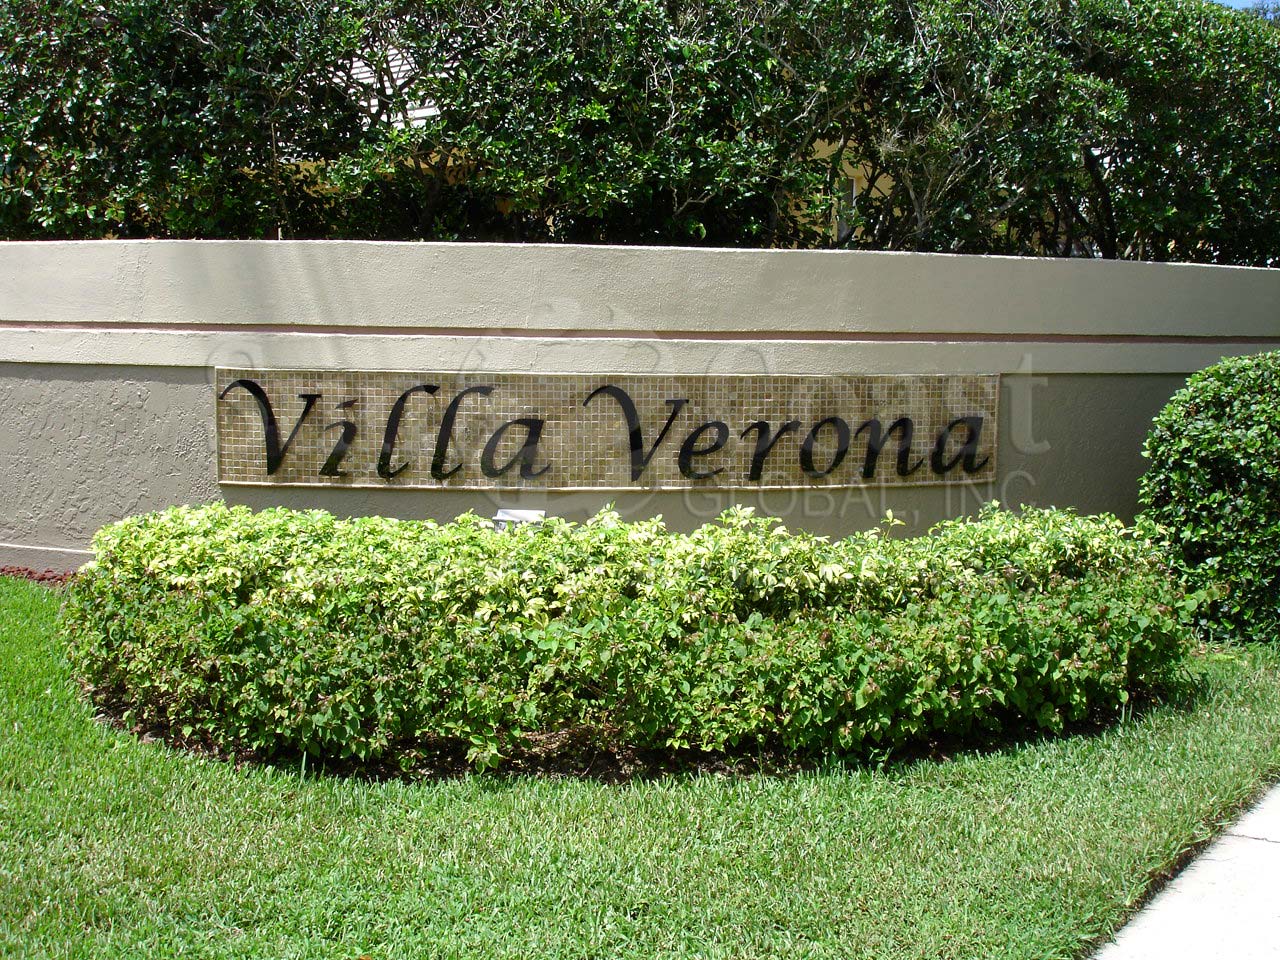 Villa Verona signage